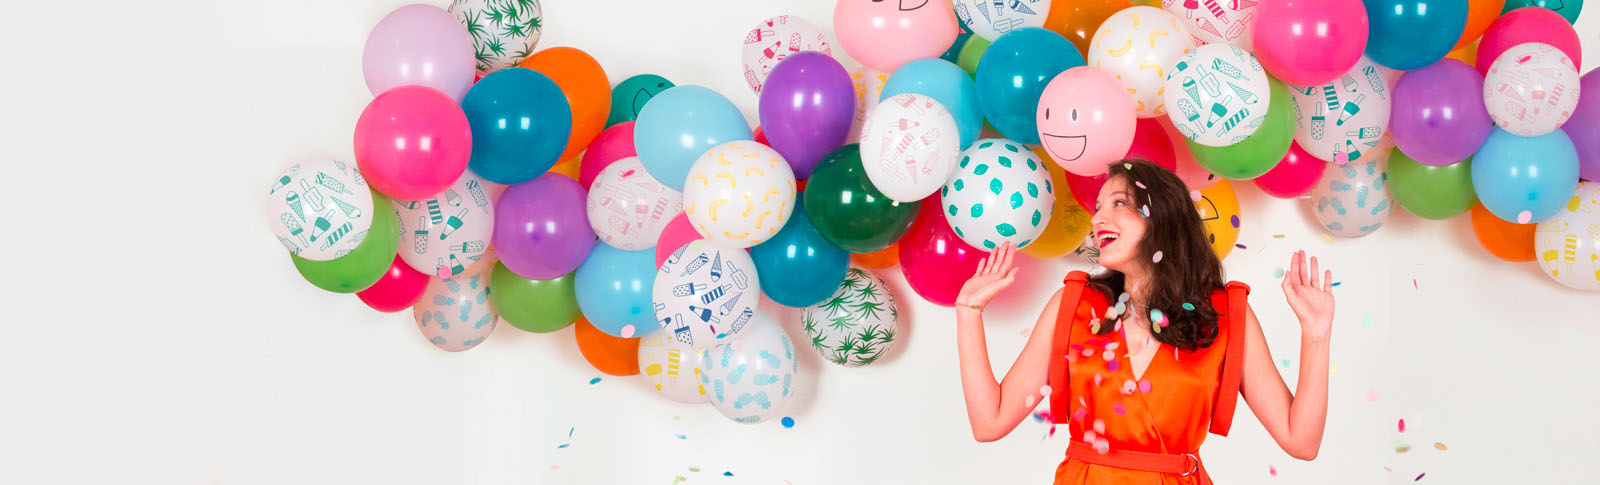 DIY para decorar con globos ideas para hacer originales y baratas